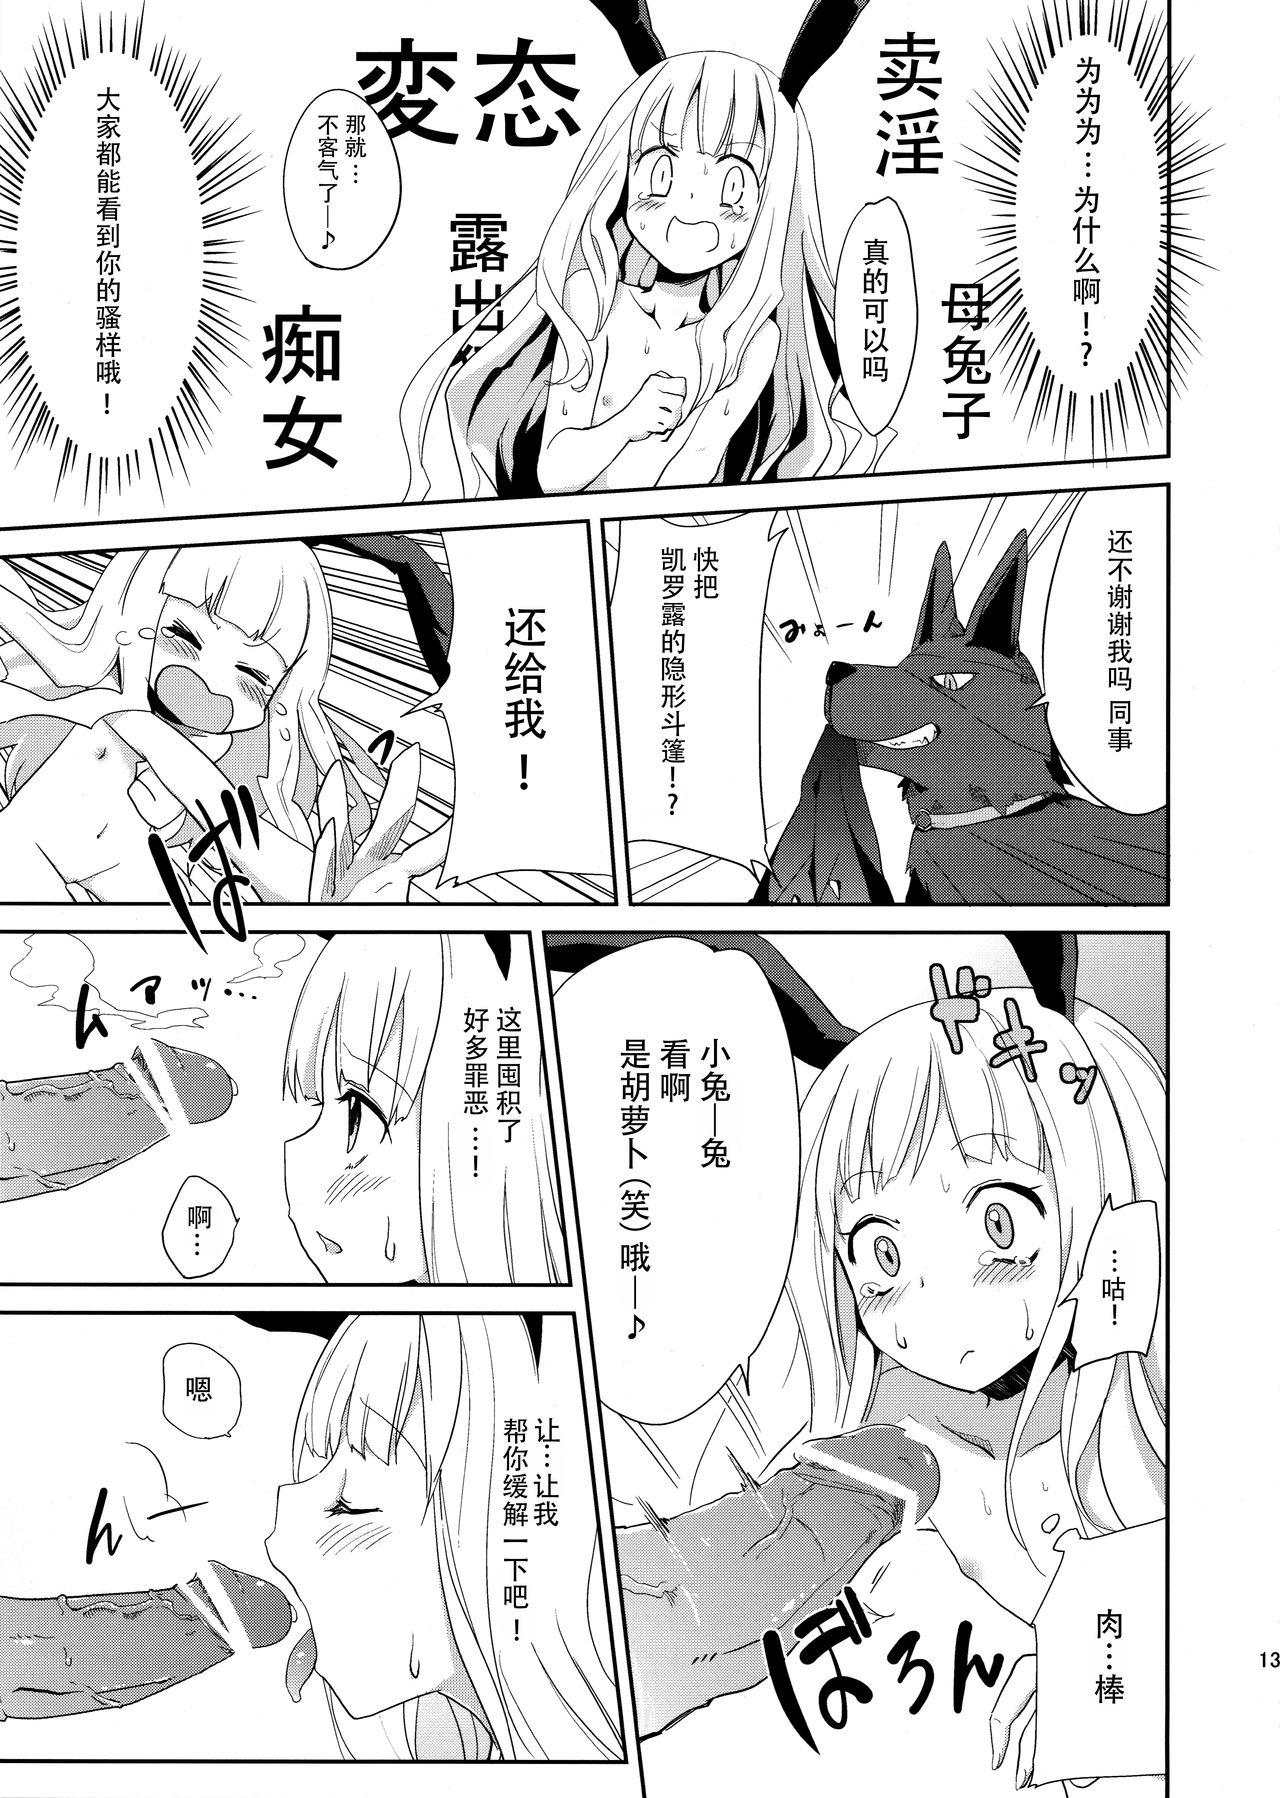 Puba Usagi Rabbit! - Original Bucetinha - Page 14